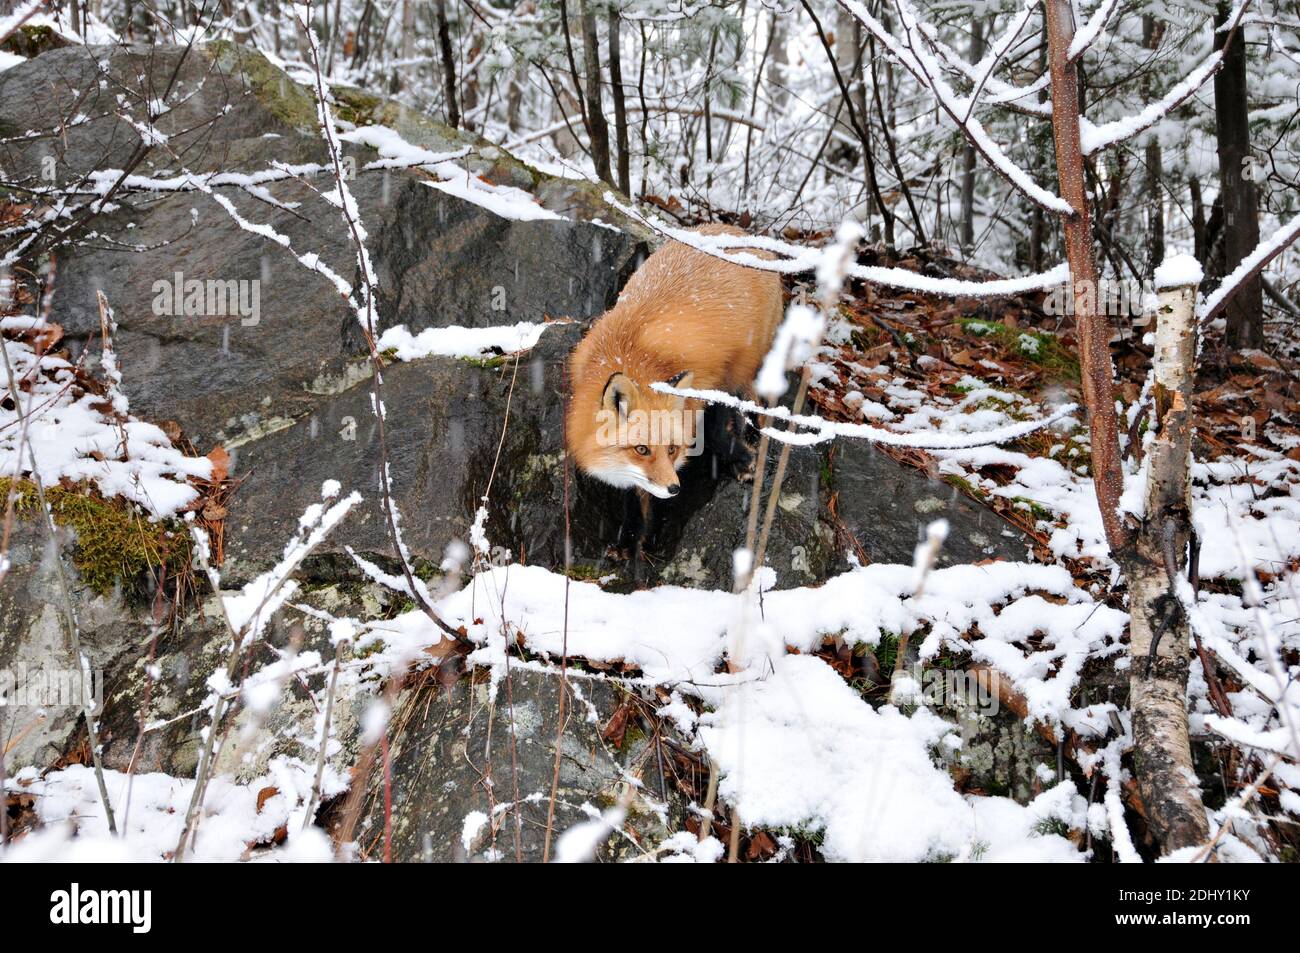 Vista ravvicinata del profilo della volpe rossa nella stagione invernale su una roccia con muschio nel suo ambiente e habitat. Immagine FOX. Immagine. Verticale. Foto. Foto Stock